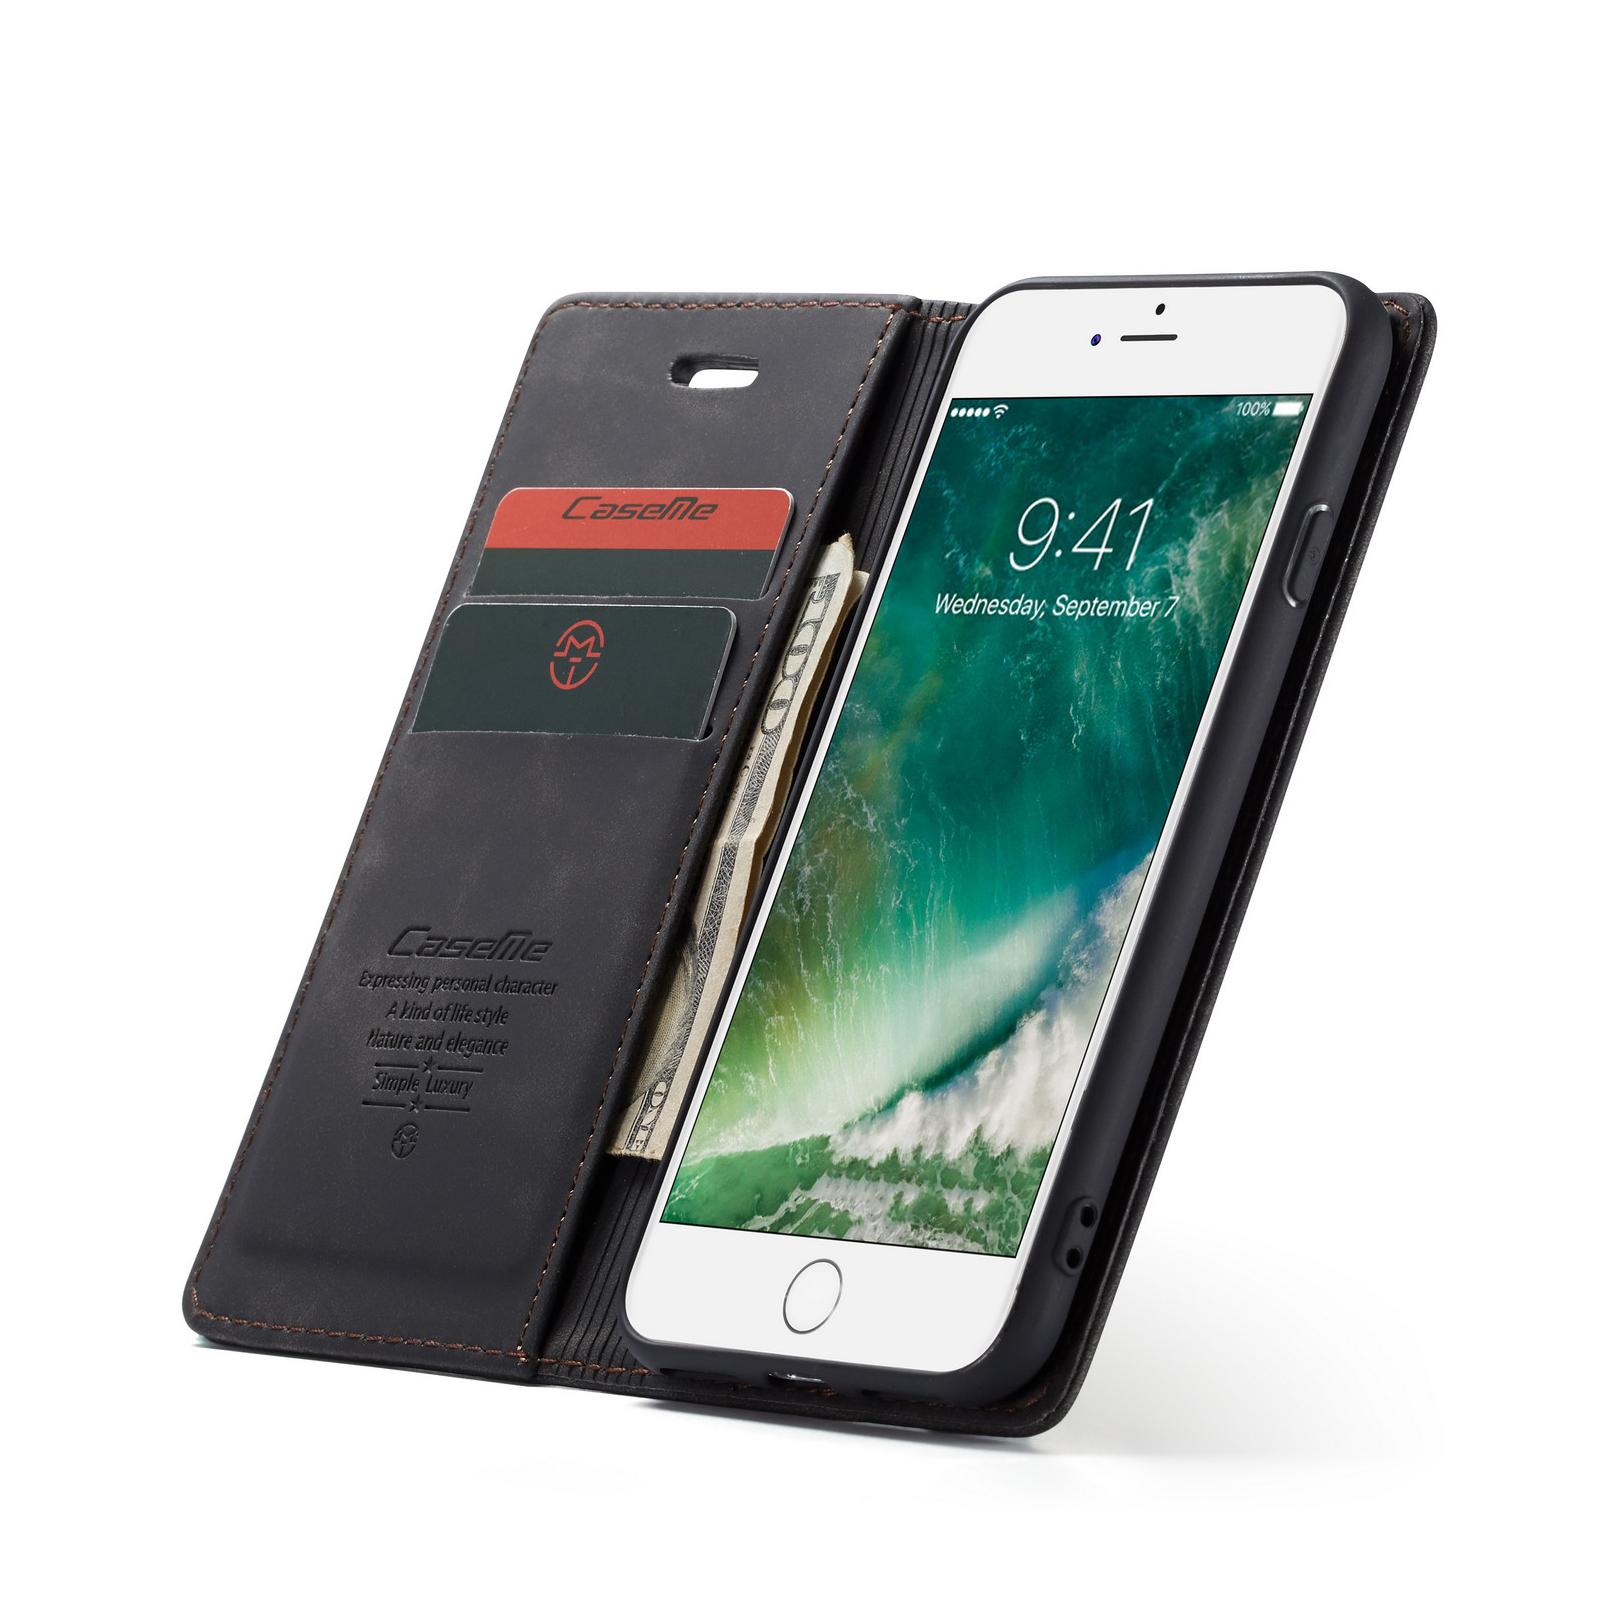 Handy Hülle für Apple iPhone Case Schutz Tasche Cover Wallet Flip Etui Edel